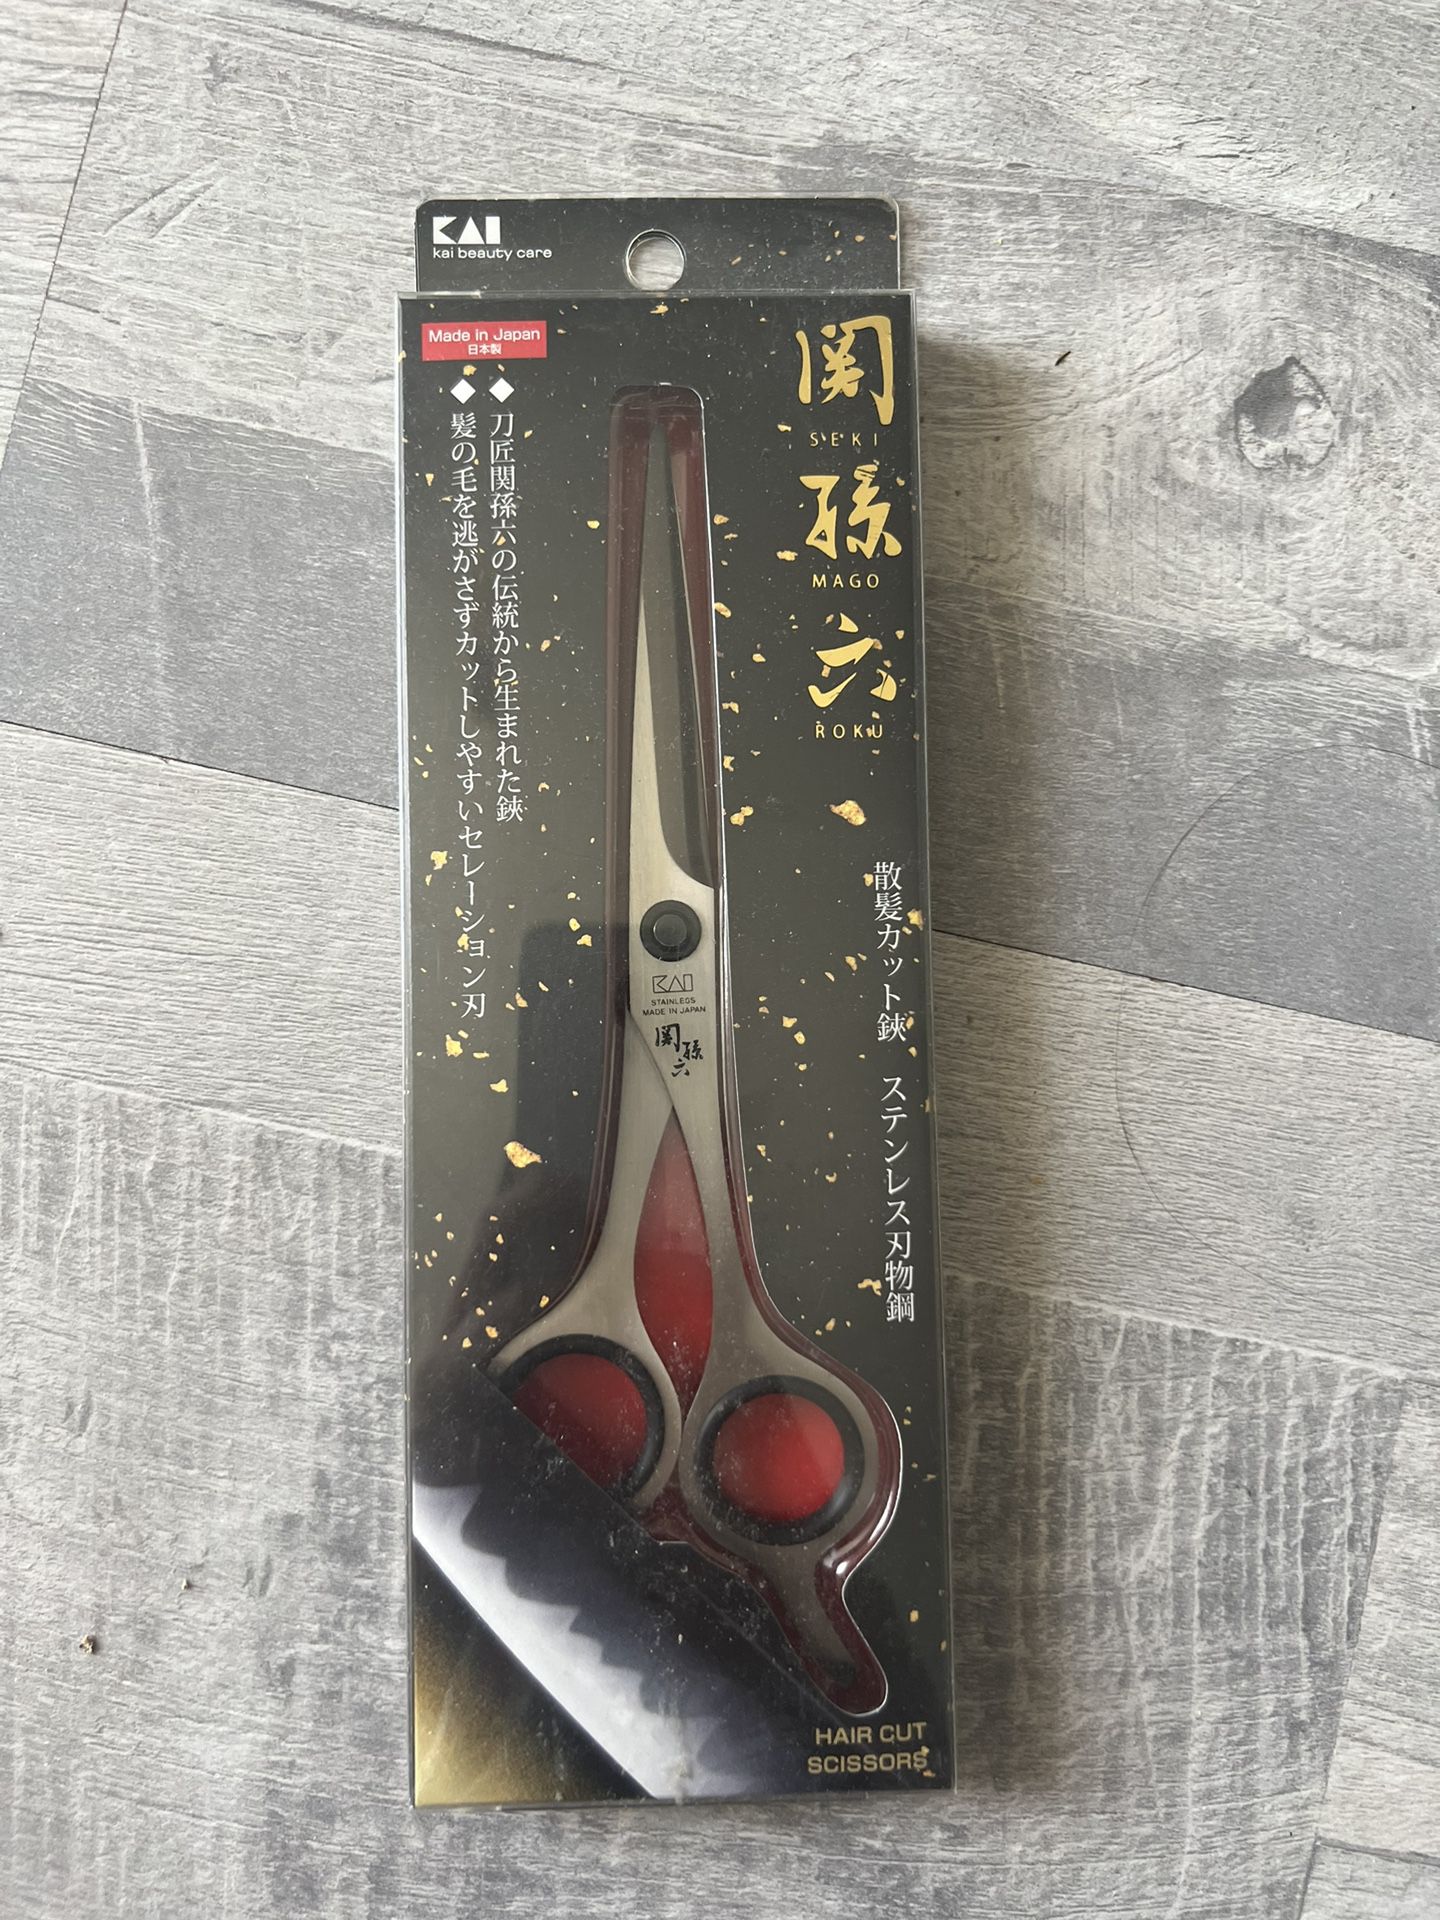 new KAI hair cut scissors made in japan